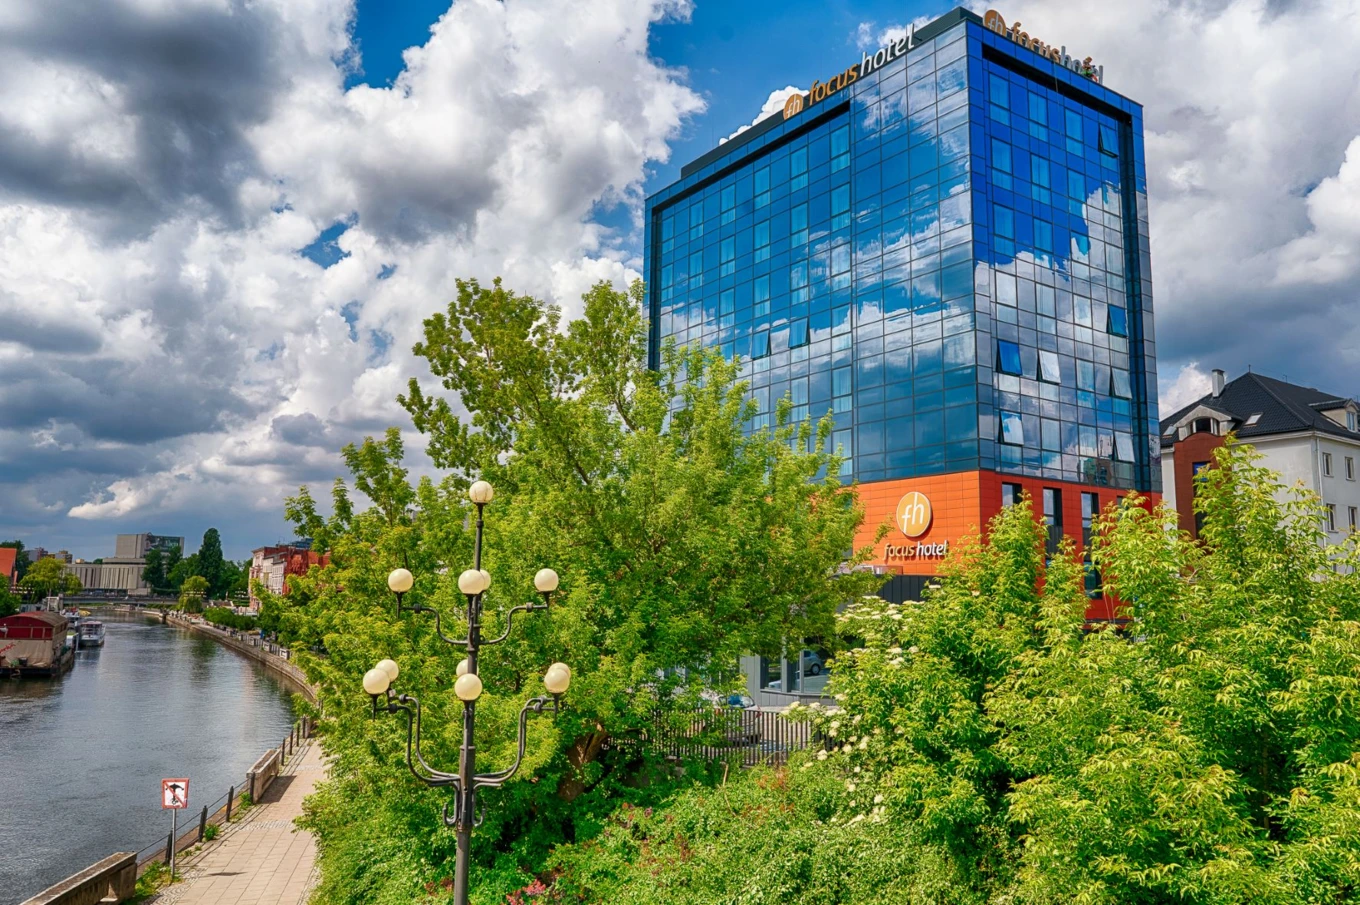 Nowy symbol Bydgoszczy - Focus Hotel Premium - już przyjmuje gości [ZDJĘCIA]